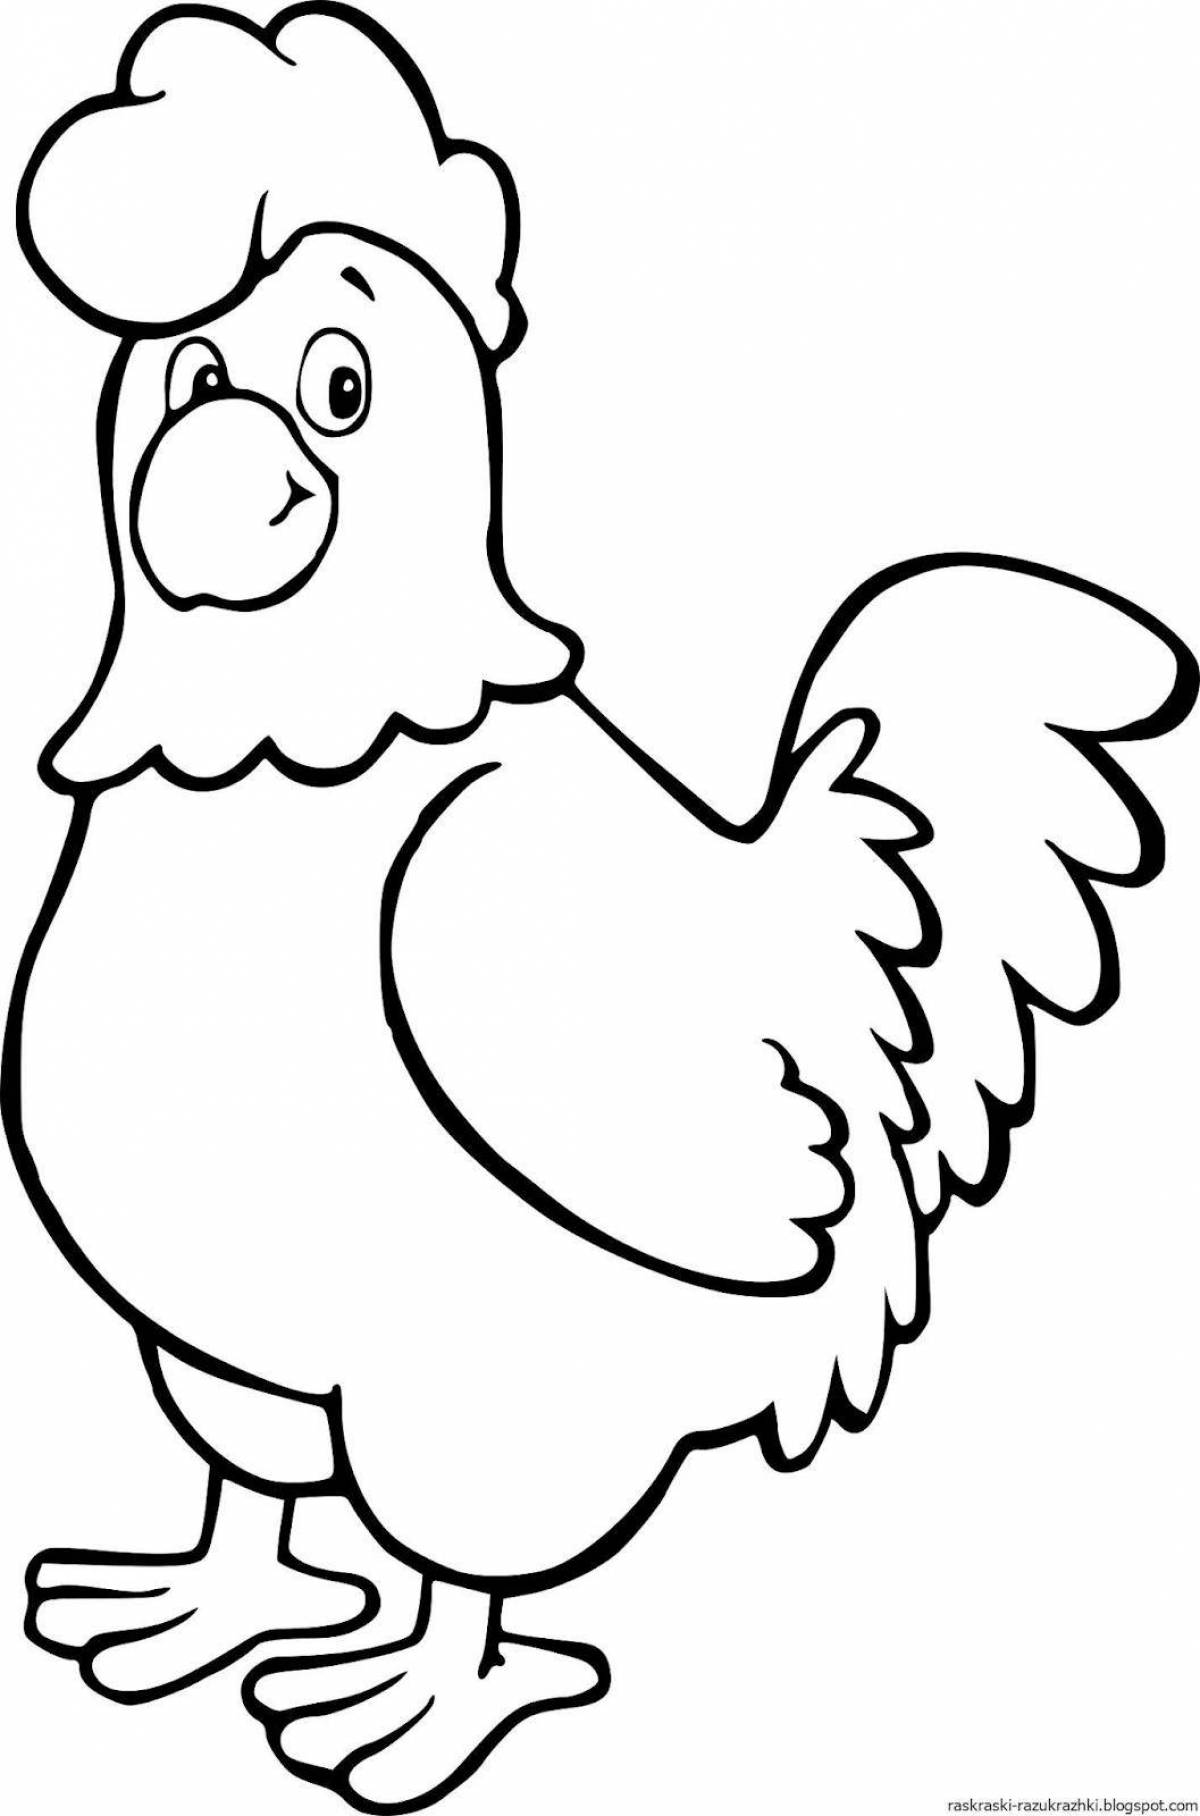 Creative chicken pattern for kids